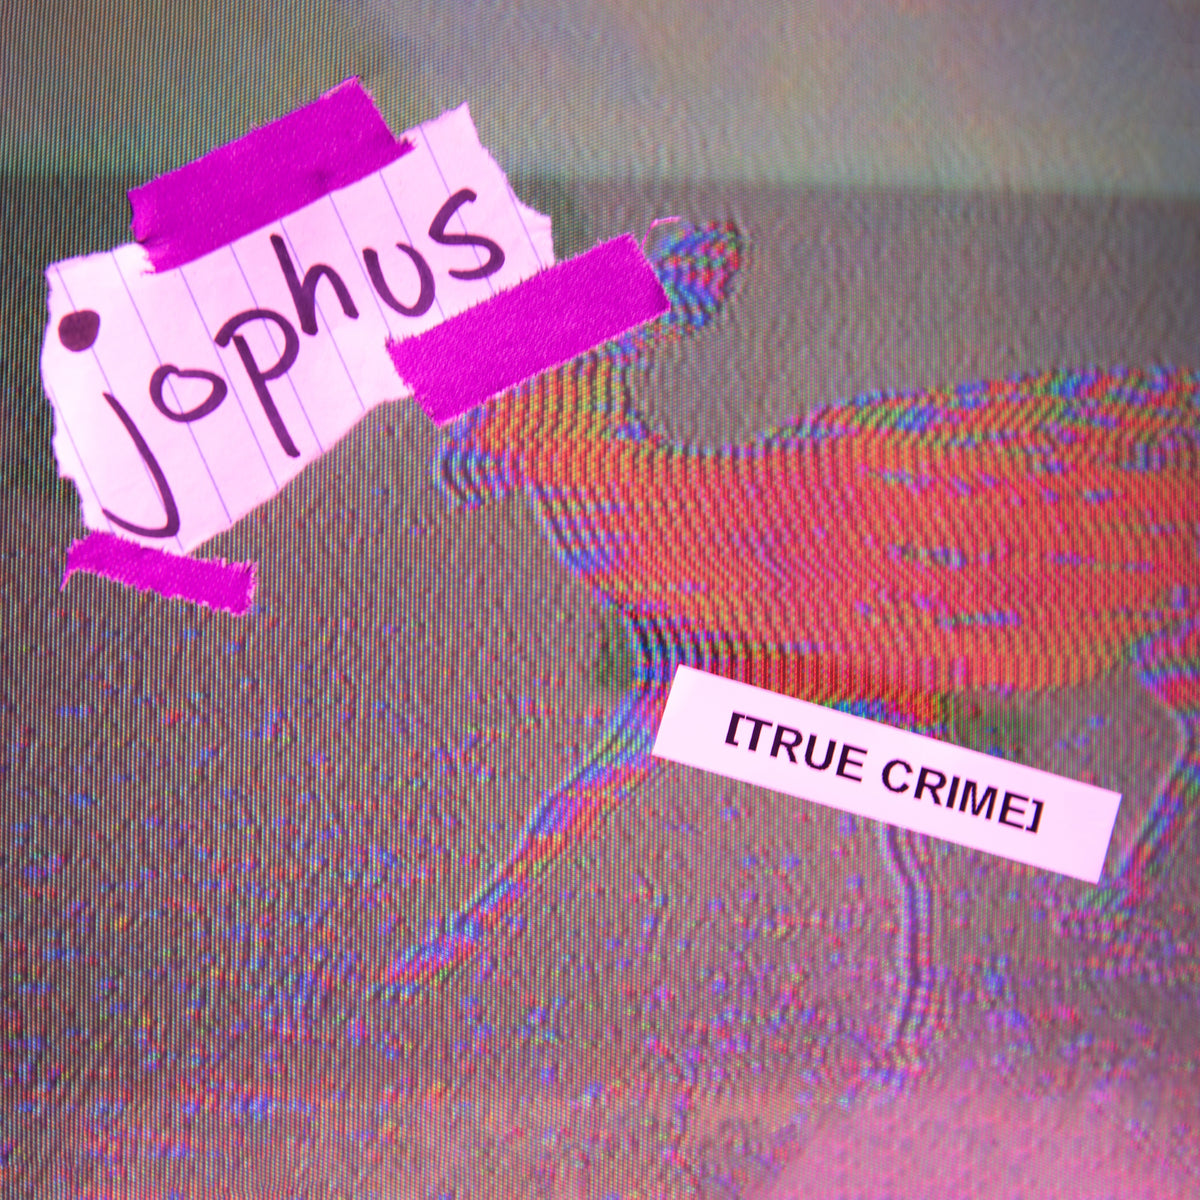 Jophus - True Crime